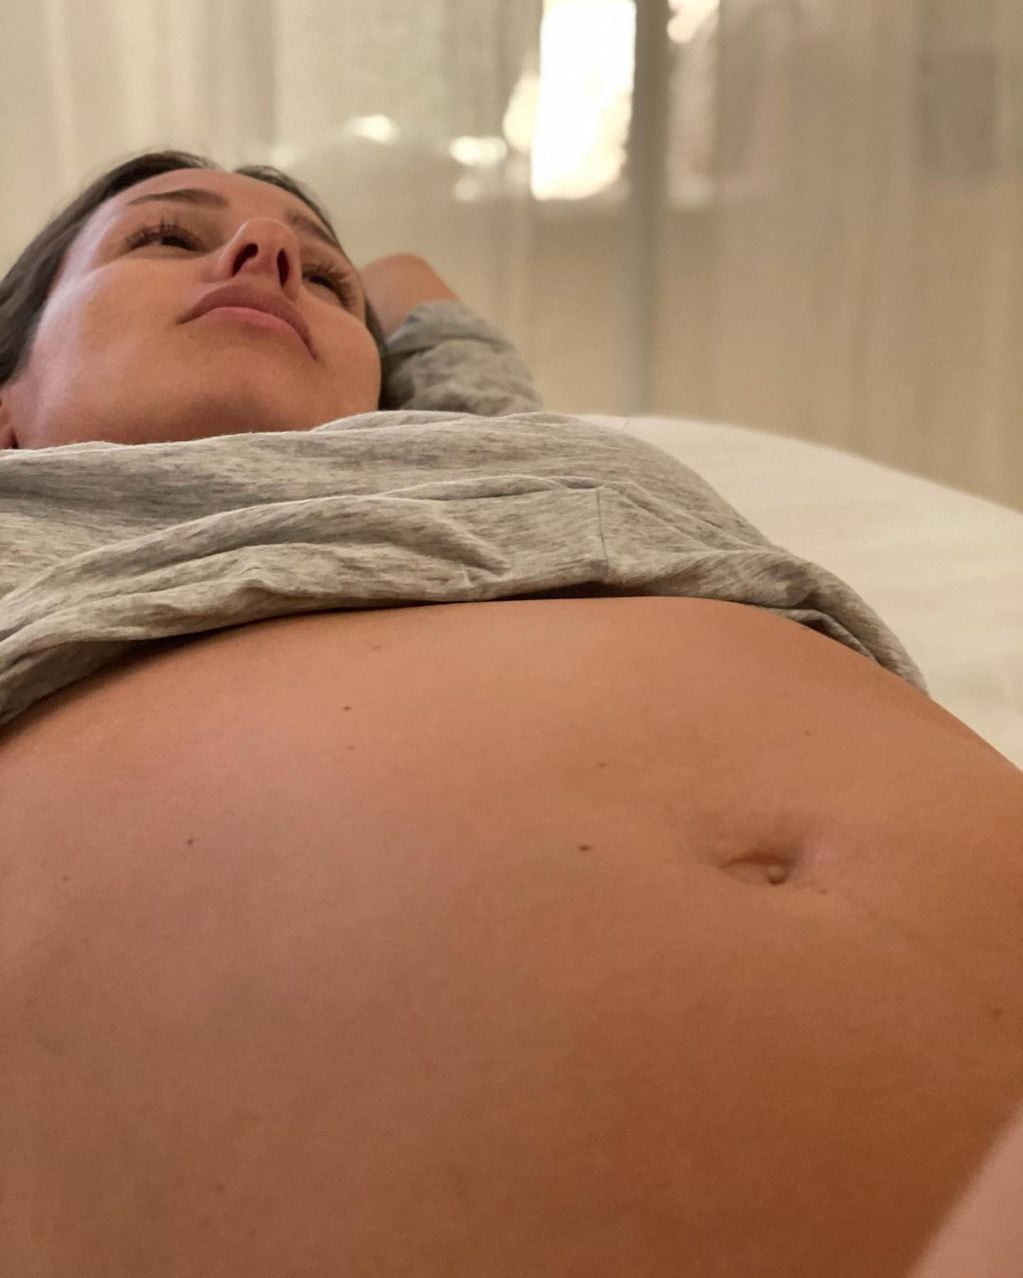 La imagen de Pampita embarazada que causó gran repercusión en las redes. (Robergmoritan